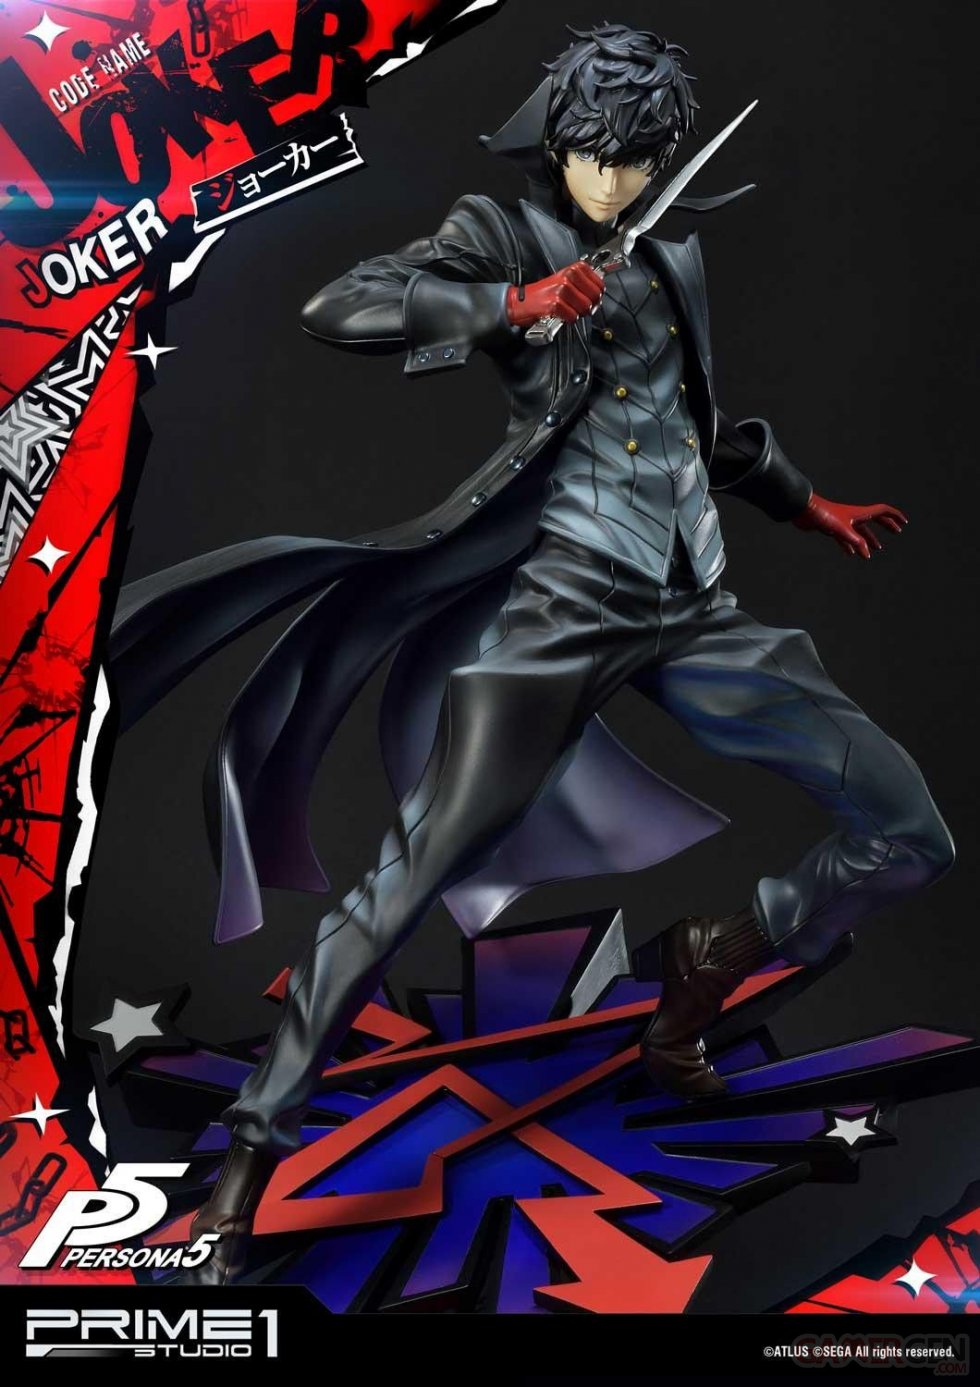 Persona-5-Joker-Prime-1-Studio-statuette-20-02-07-2020